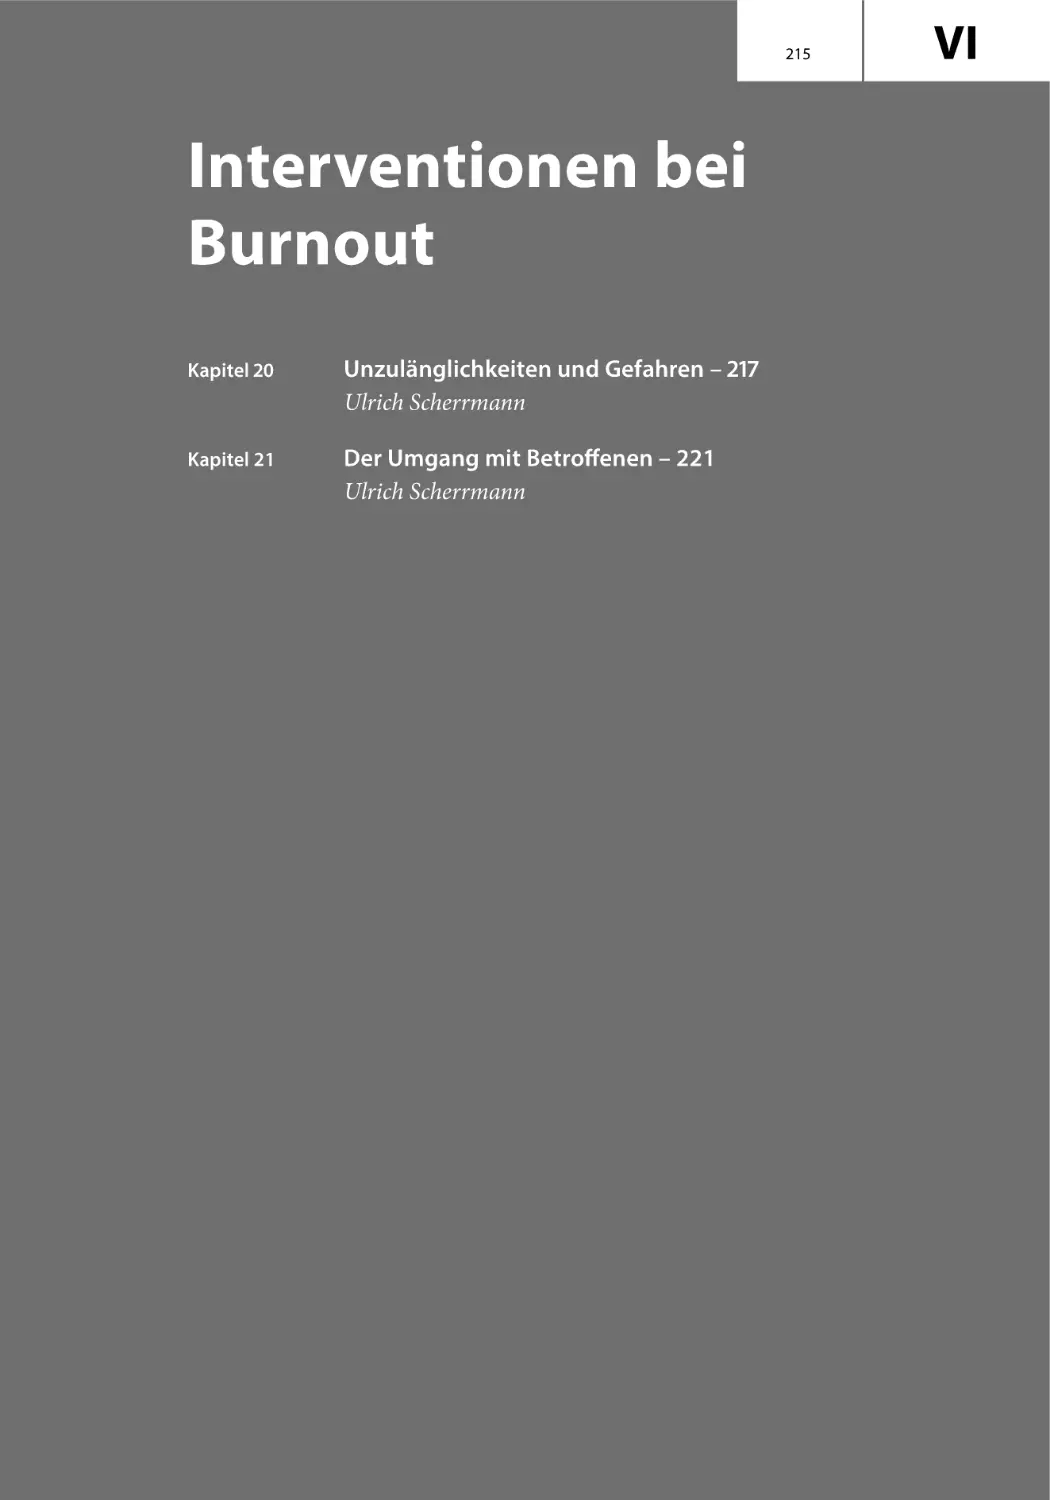 VI
Interventionen bei Burnout